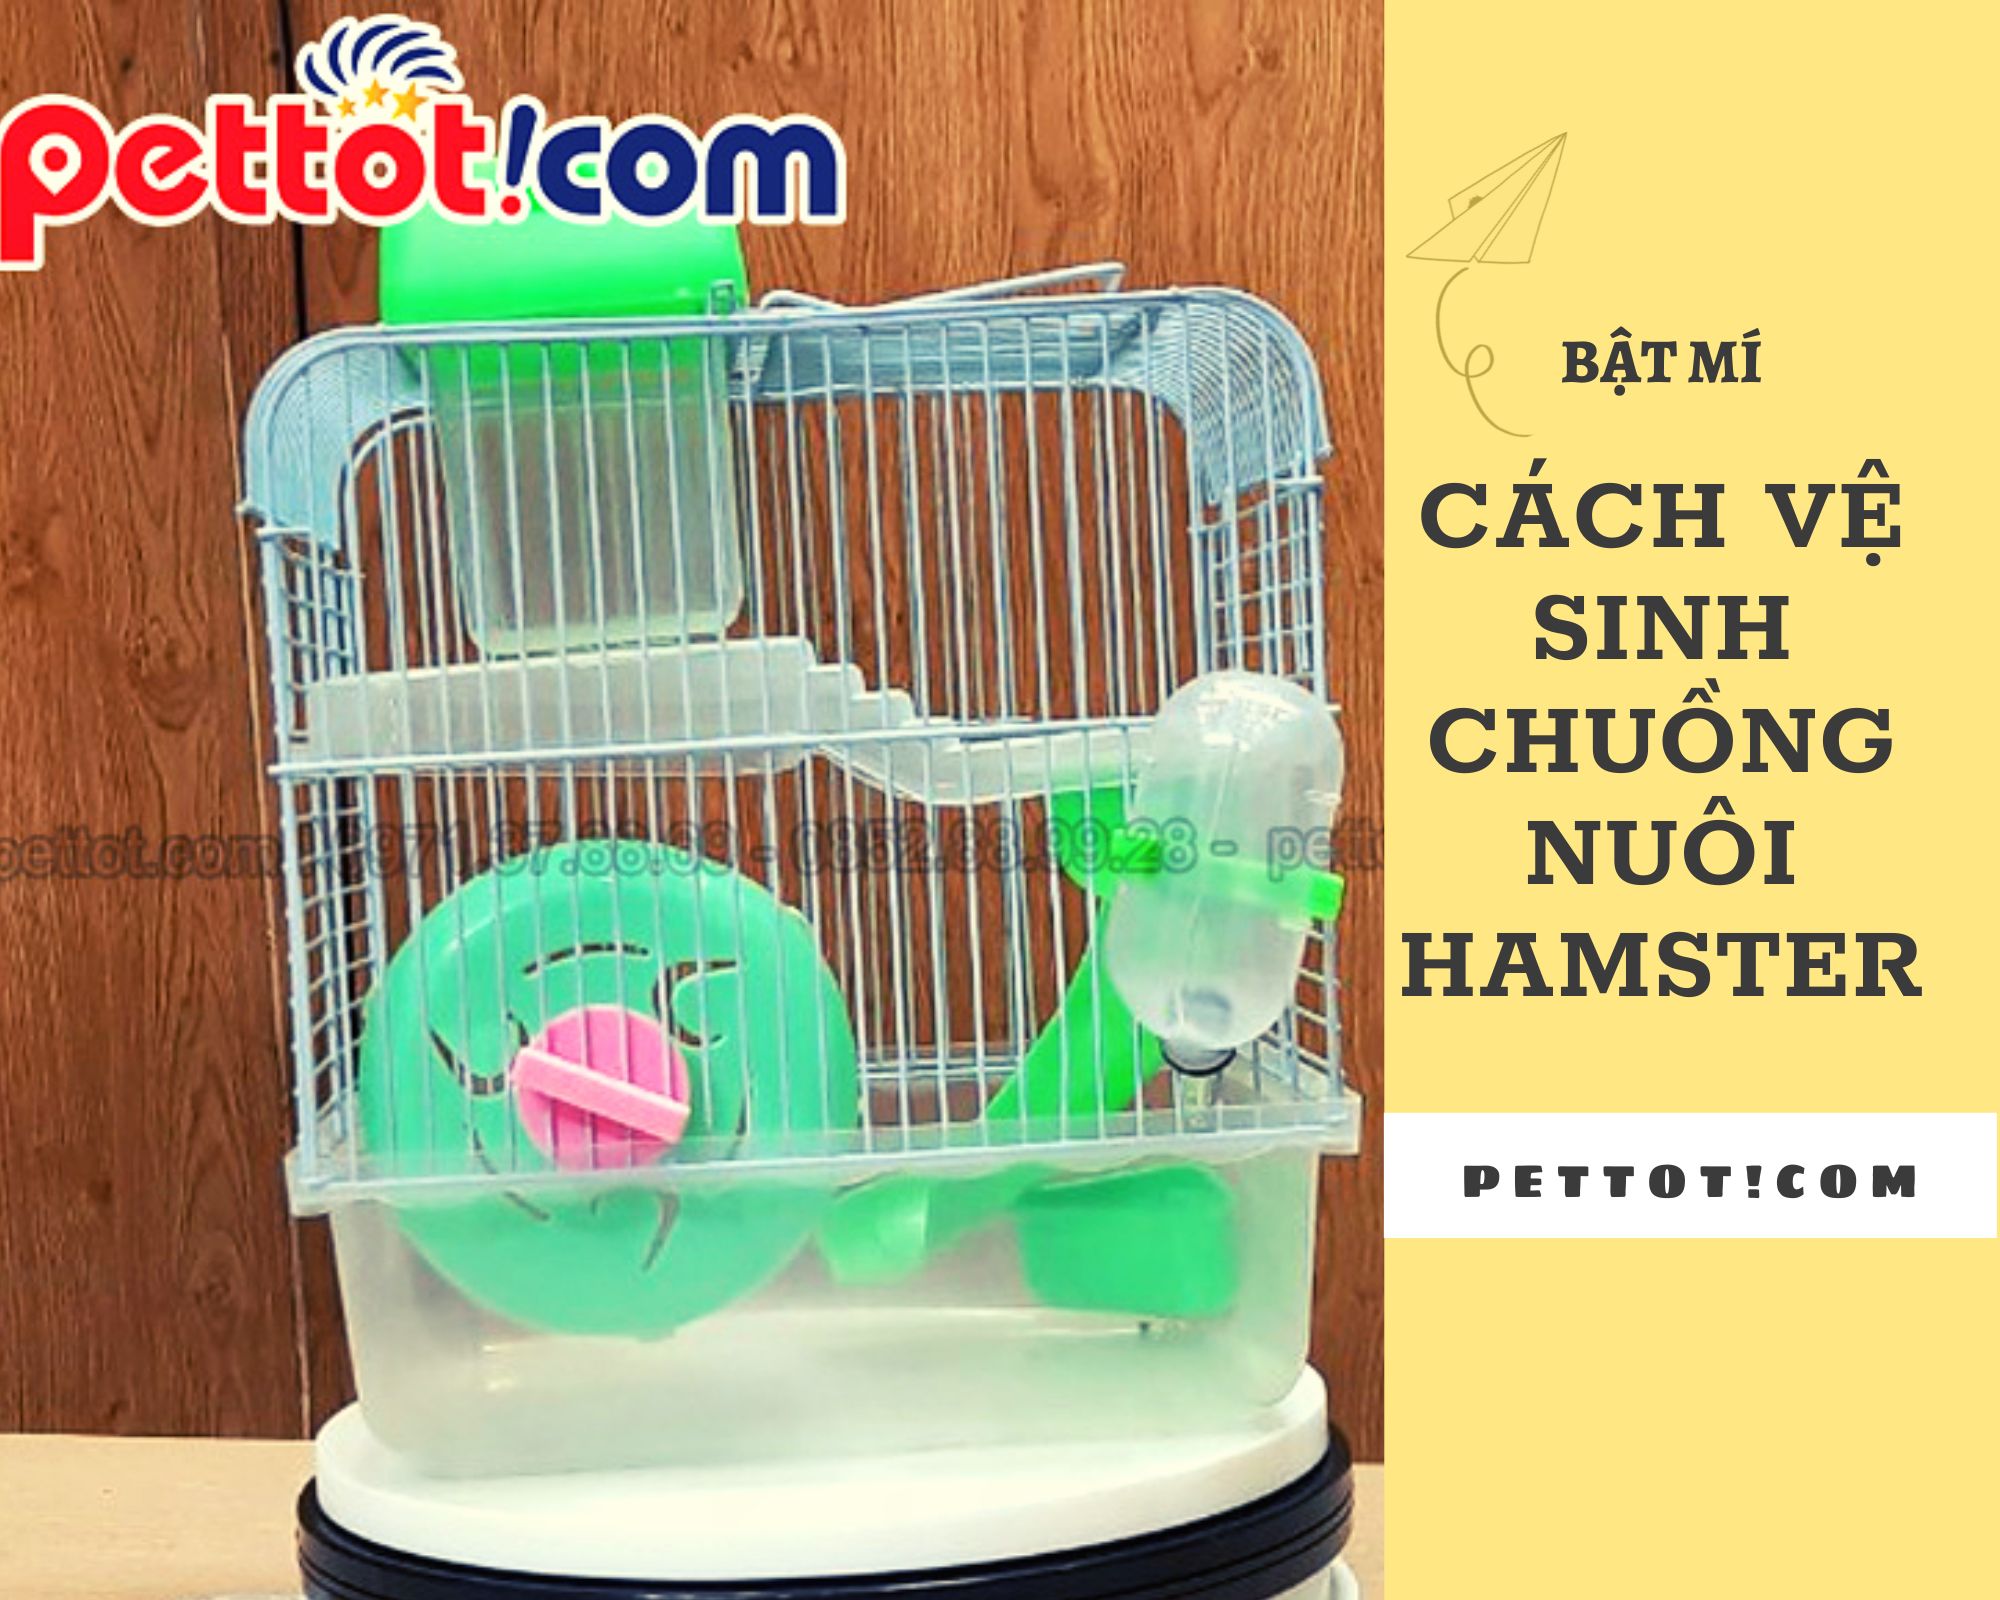 Các bước vệ sinh chuồng nuôi hamster đơn giản tại nhà